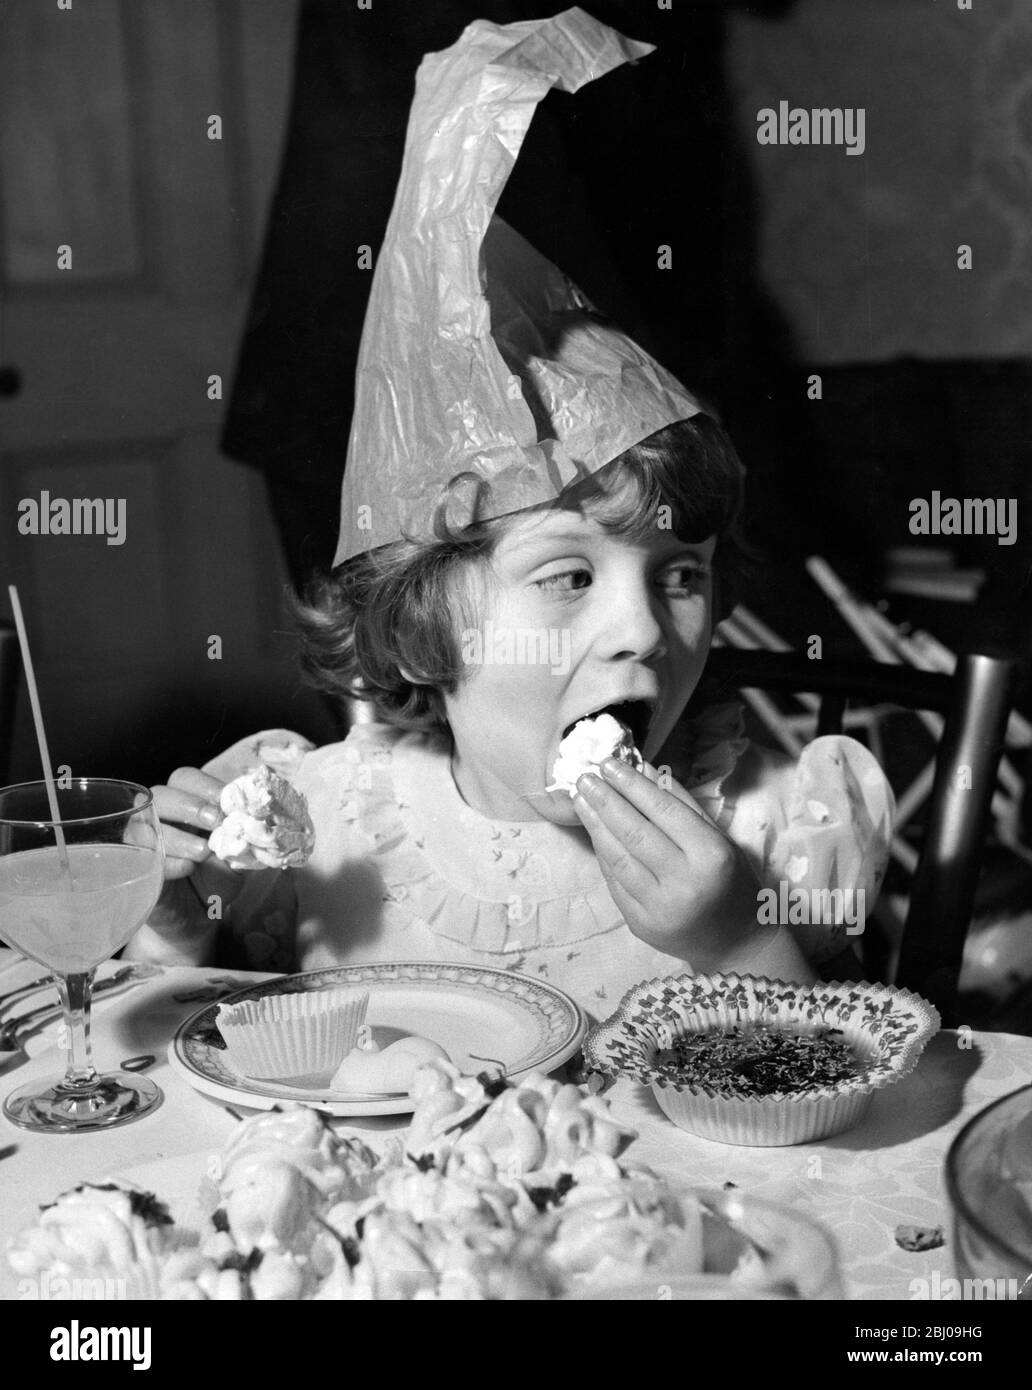 Della Anphlett, 6 Jahre alt, isst einen Becher Kuchen auf der Variety Club Christmas Party für Kinder im St. Agnes Waisenhaus, Thames Ditton. - 15 Ennismore Gardens, London SW7, England - 19. Dezember 1959 Stockfoto